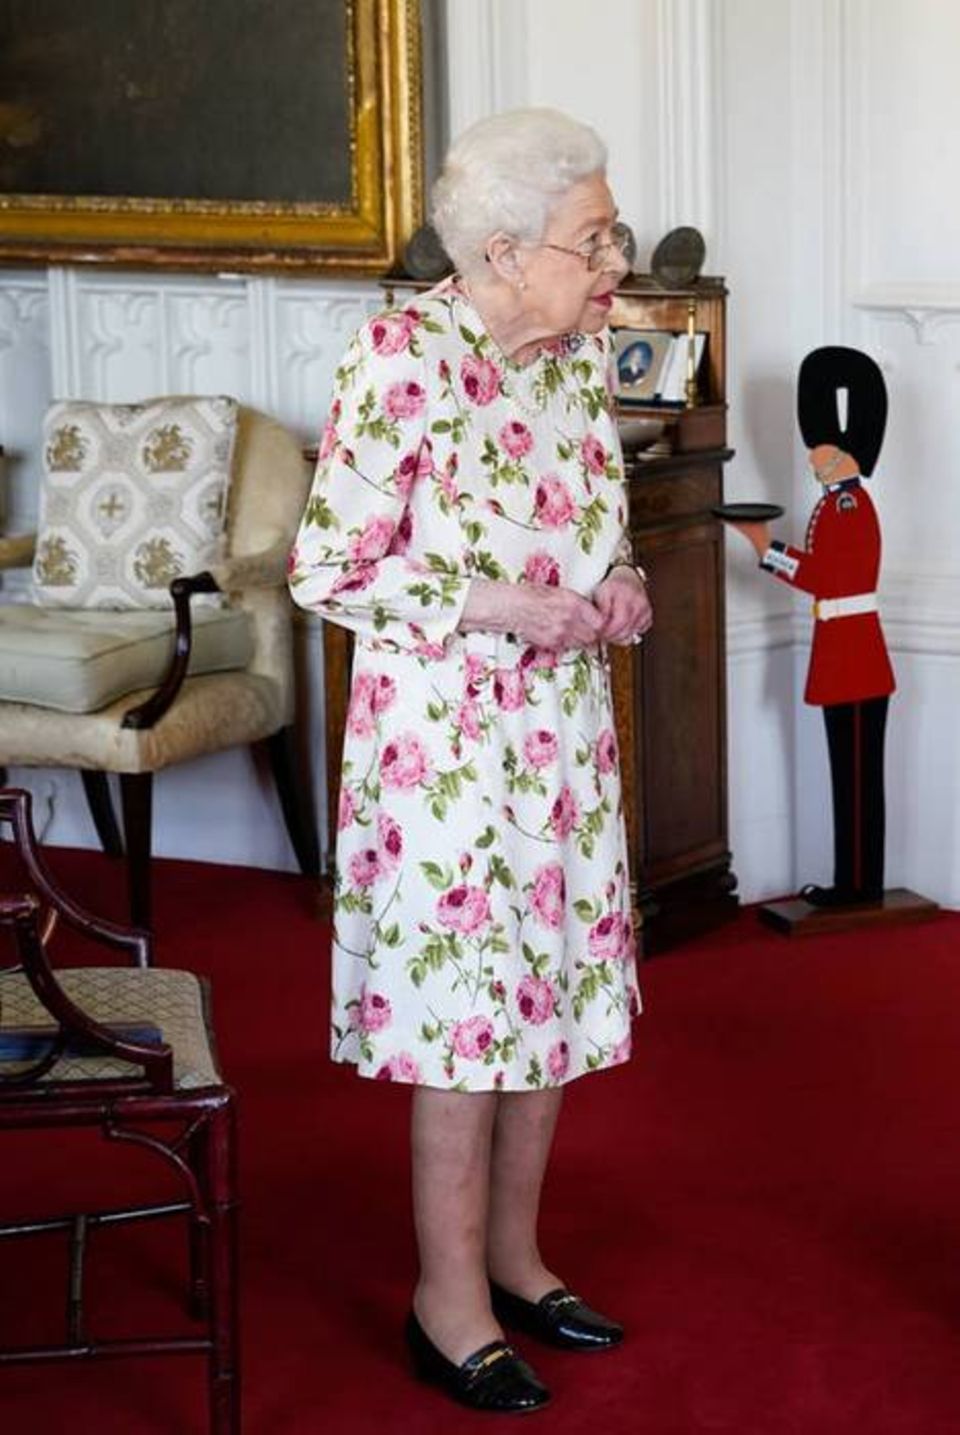 Königin Elizabeth II beim Empfang des Erzbischofs im Blümchenkleid.